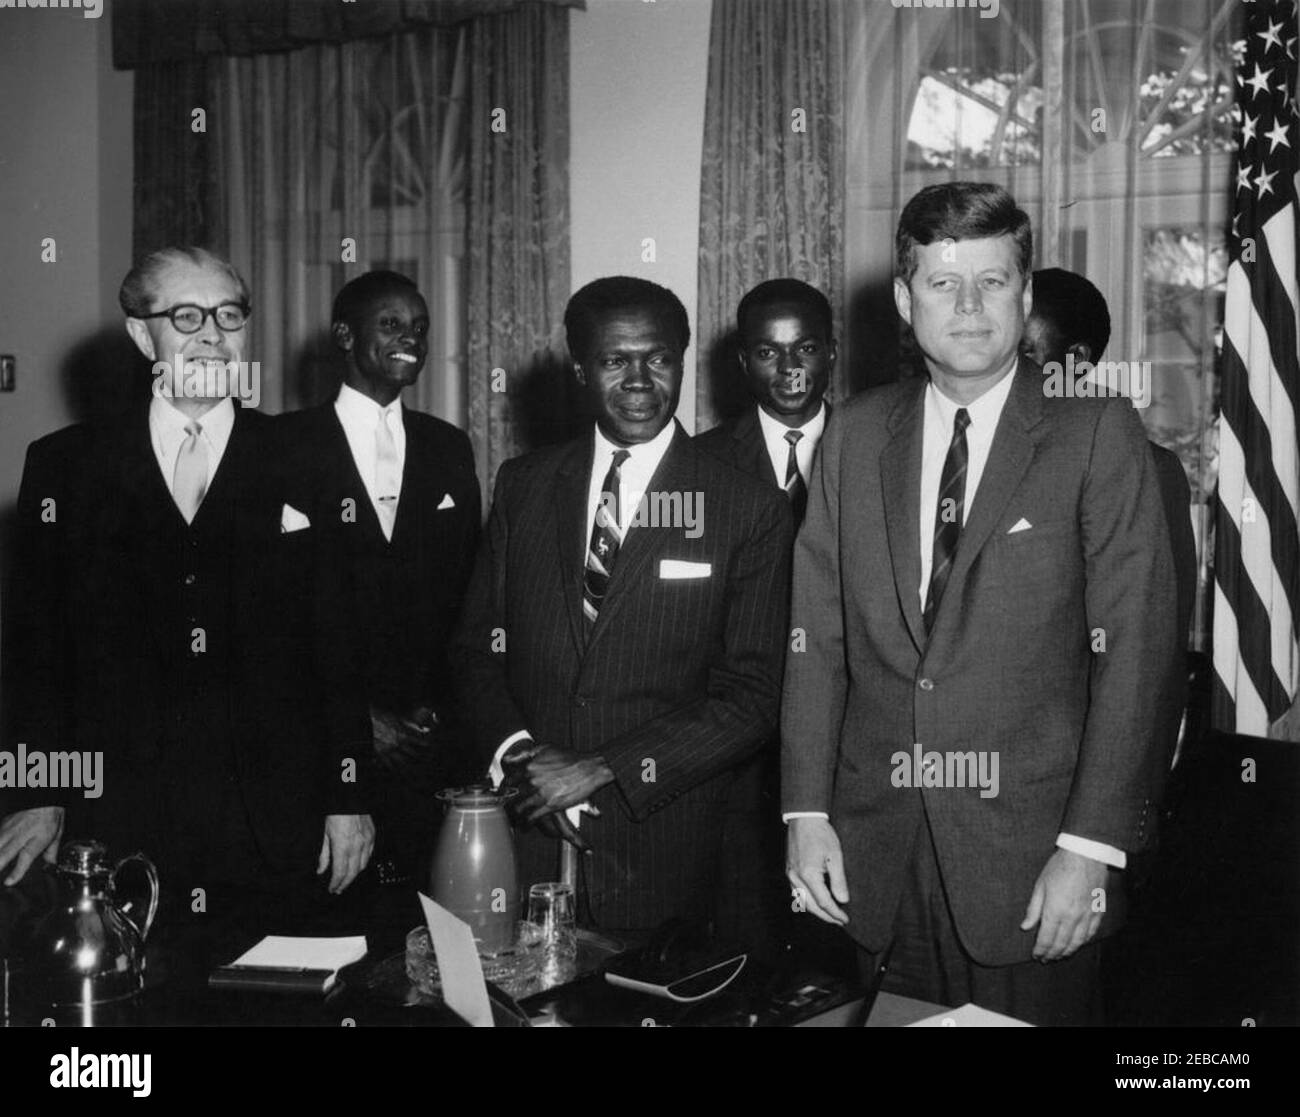 Treffen mit Apollo Milton Obote, Premierminister von Uganda, 4:03pm Uhr. Präsident John F. Kennedy trifft sich mit Premierminister von Uganda, A. Milton Obote, im Kabinettsaal des Weißen Hauses, Washington, D.C., von links nach rechts: Finanzminister und Wirtschaftsminister von Uganda, James Simpson; Justizminister von Uganda, Grace Ibingira; Premierminister Obote; Generalsekretär des Uganda-Kongresses Peopleu0027s, John Kakonge; Präsident Kennedy; Vertreter bei den Vereinten Nationen (UN) aus Uganda, Apollo Kironde (hinten, meist versteckt). Stockfoto